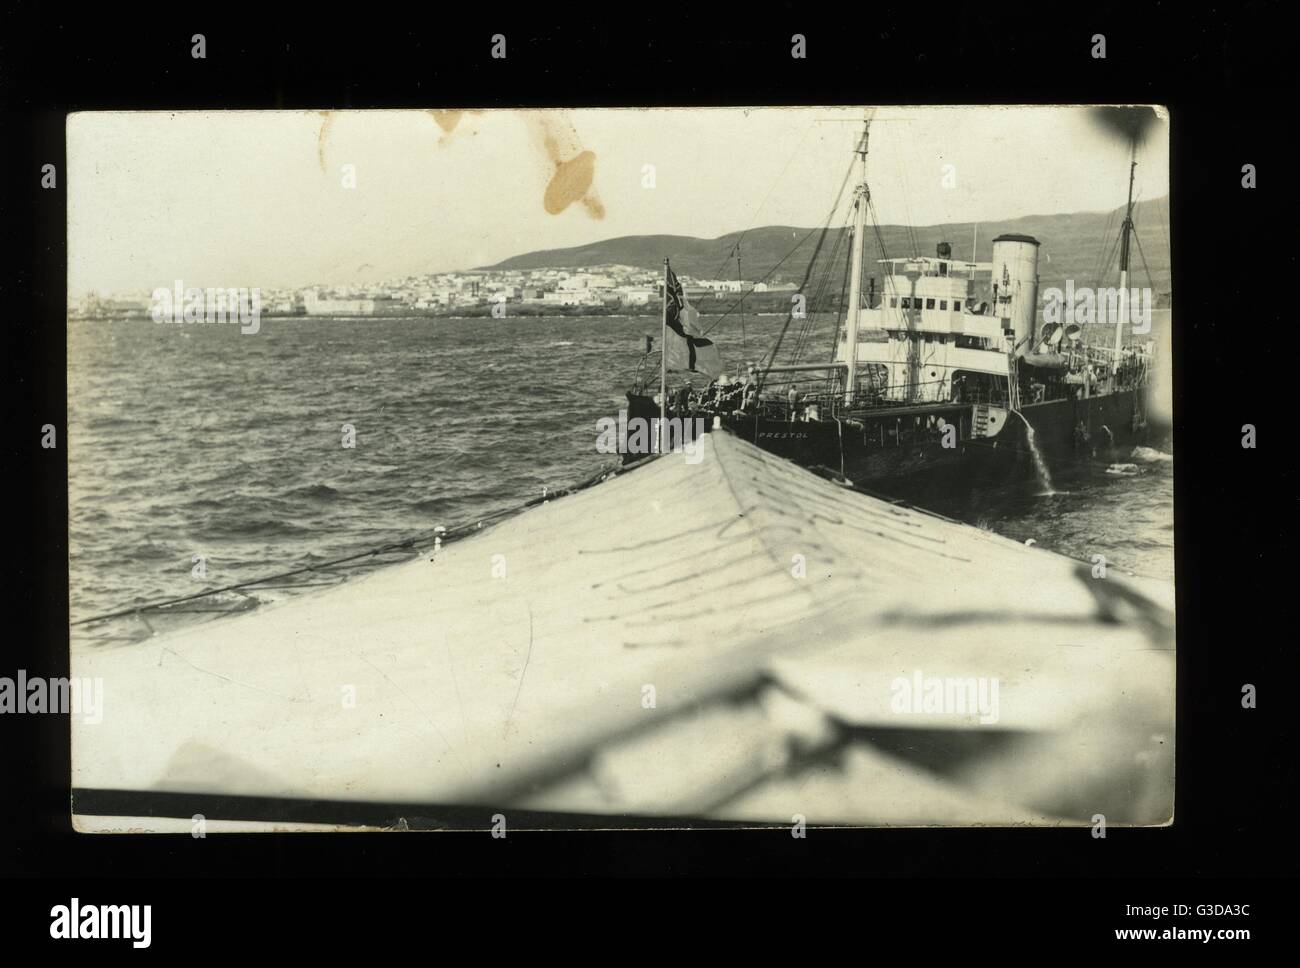 RFA (Royal Fleet Auxiliary) Prestol Belgol-Klasse Tanker und Kriegsschiff mit Küste (möglicherweise Spanien) im Hintergrund.      Datum: ca. 1920er Jahre Stockfoto